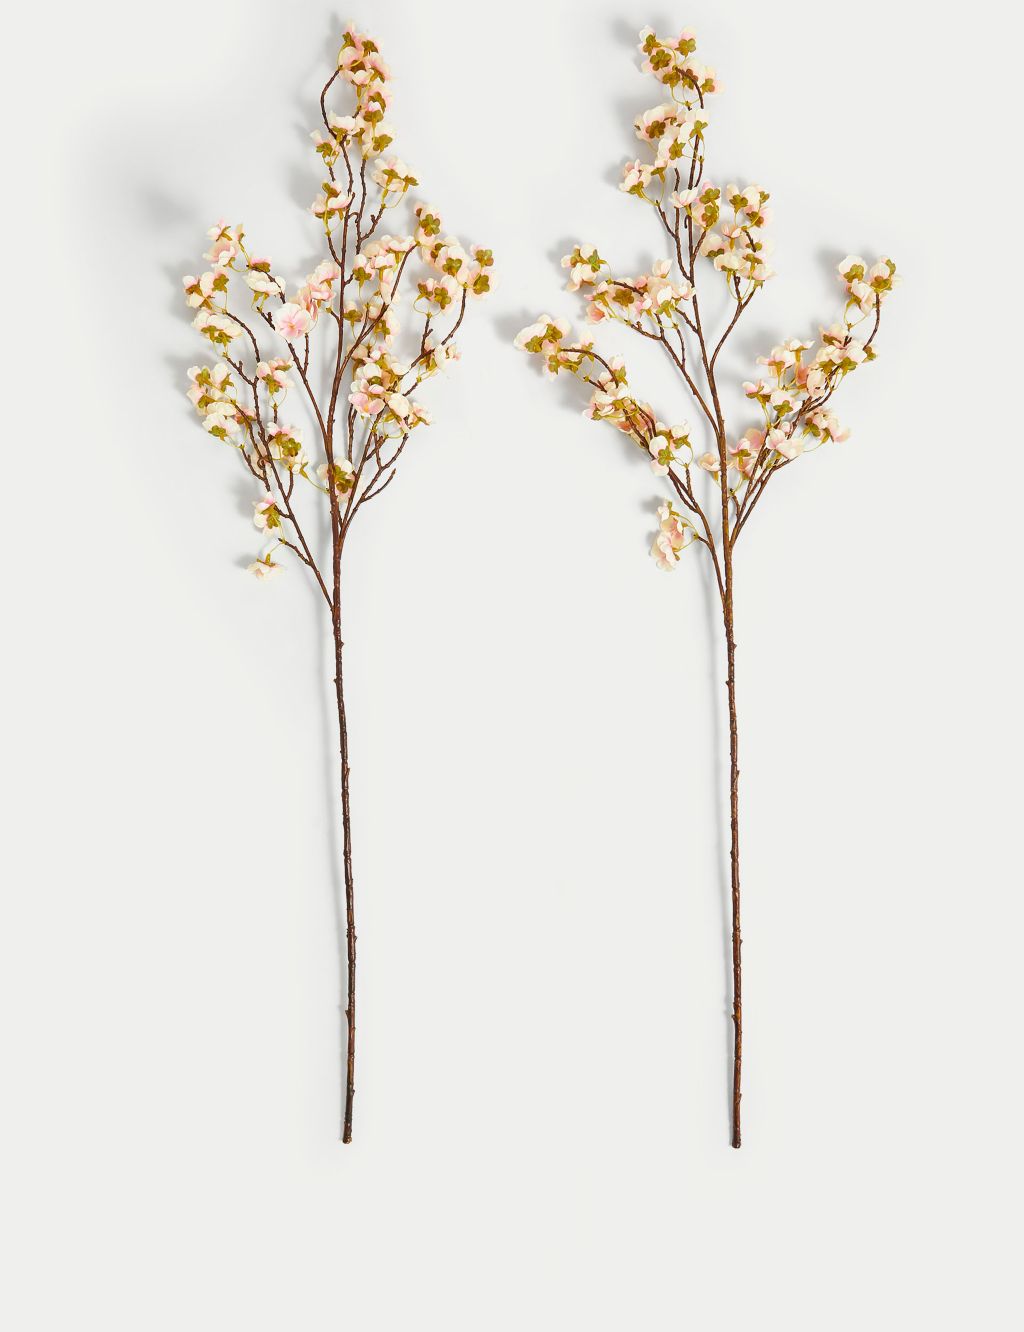 Set of 2 Artificial Cherry Blossom Single Stems